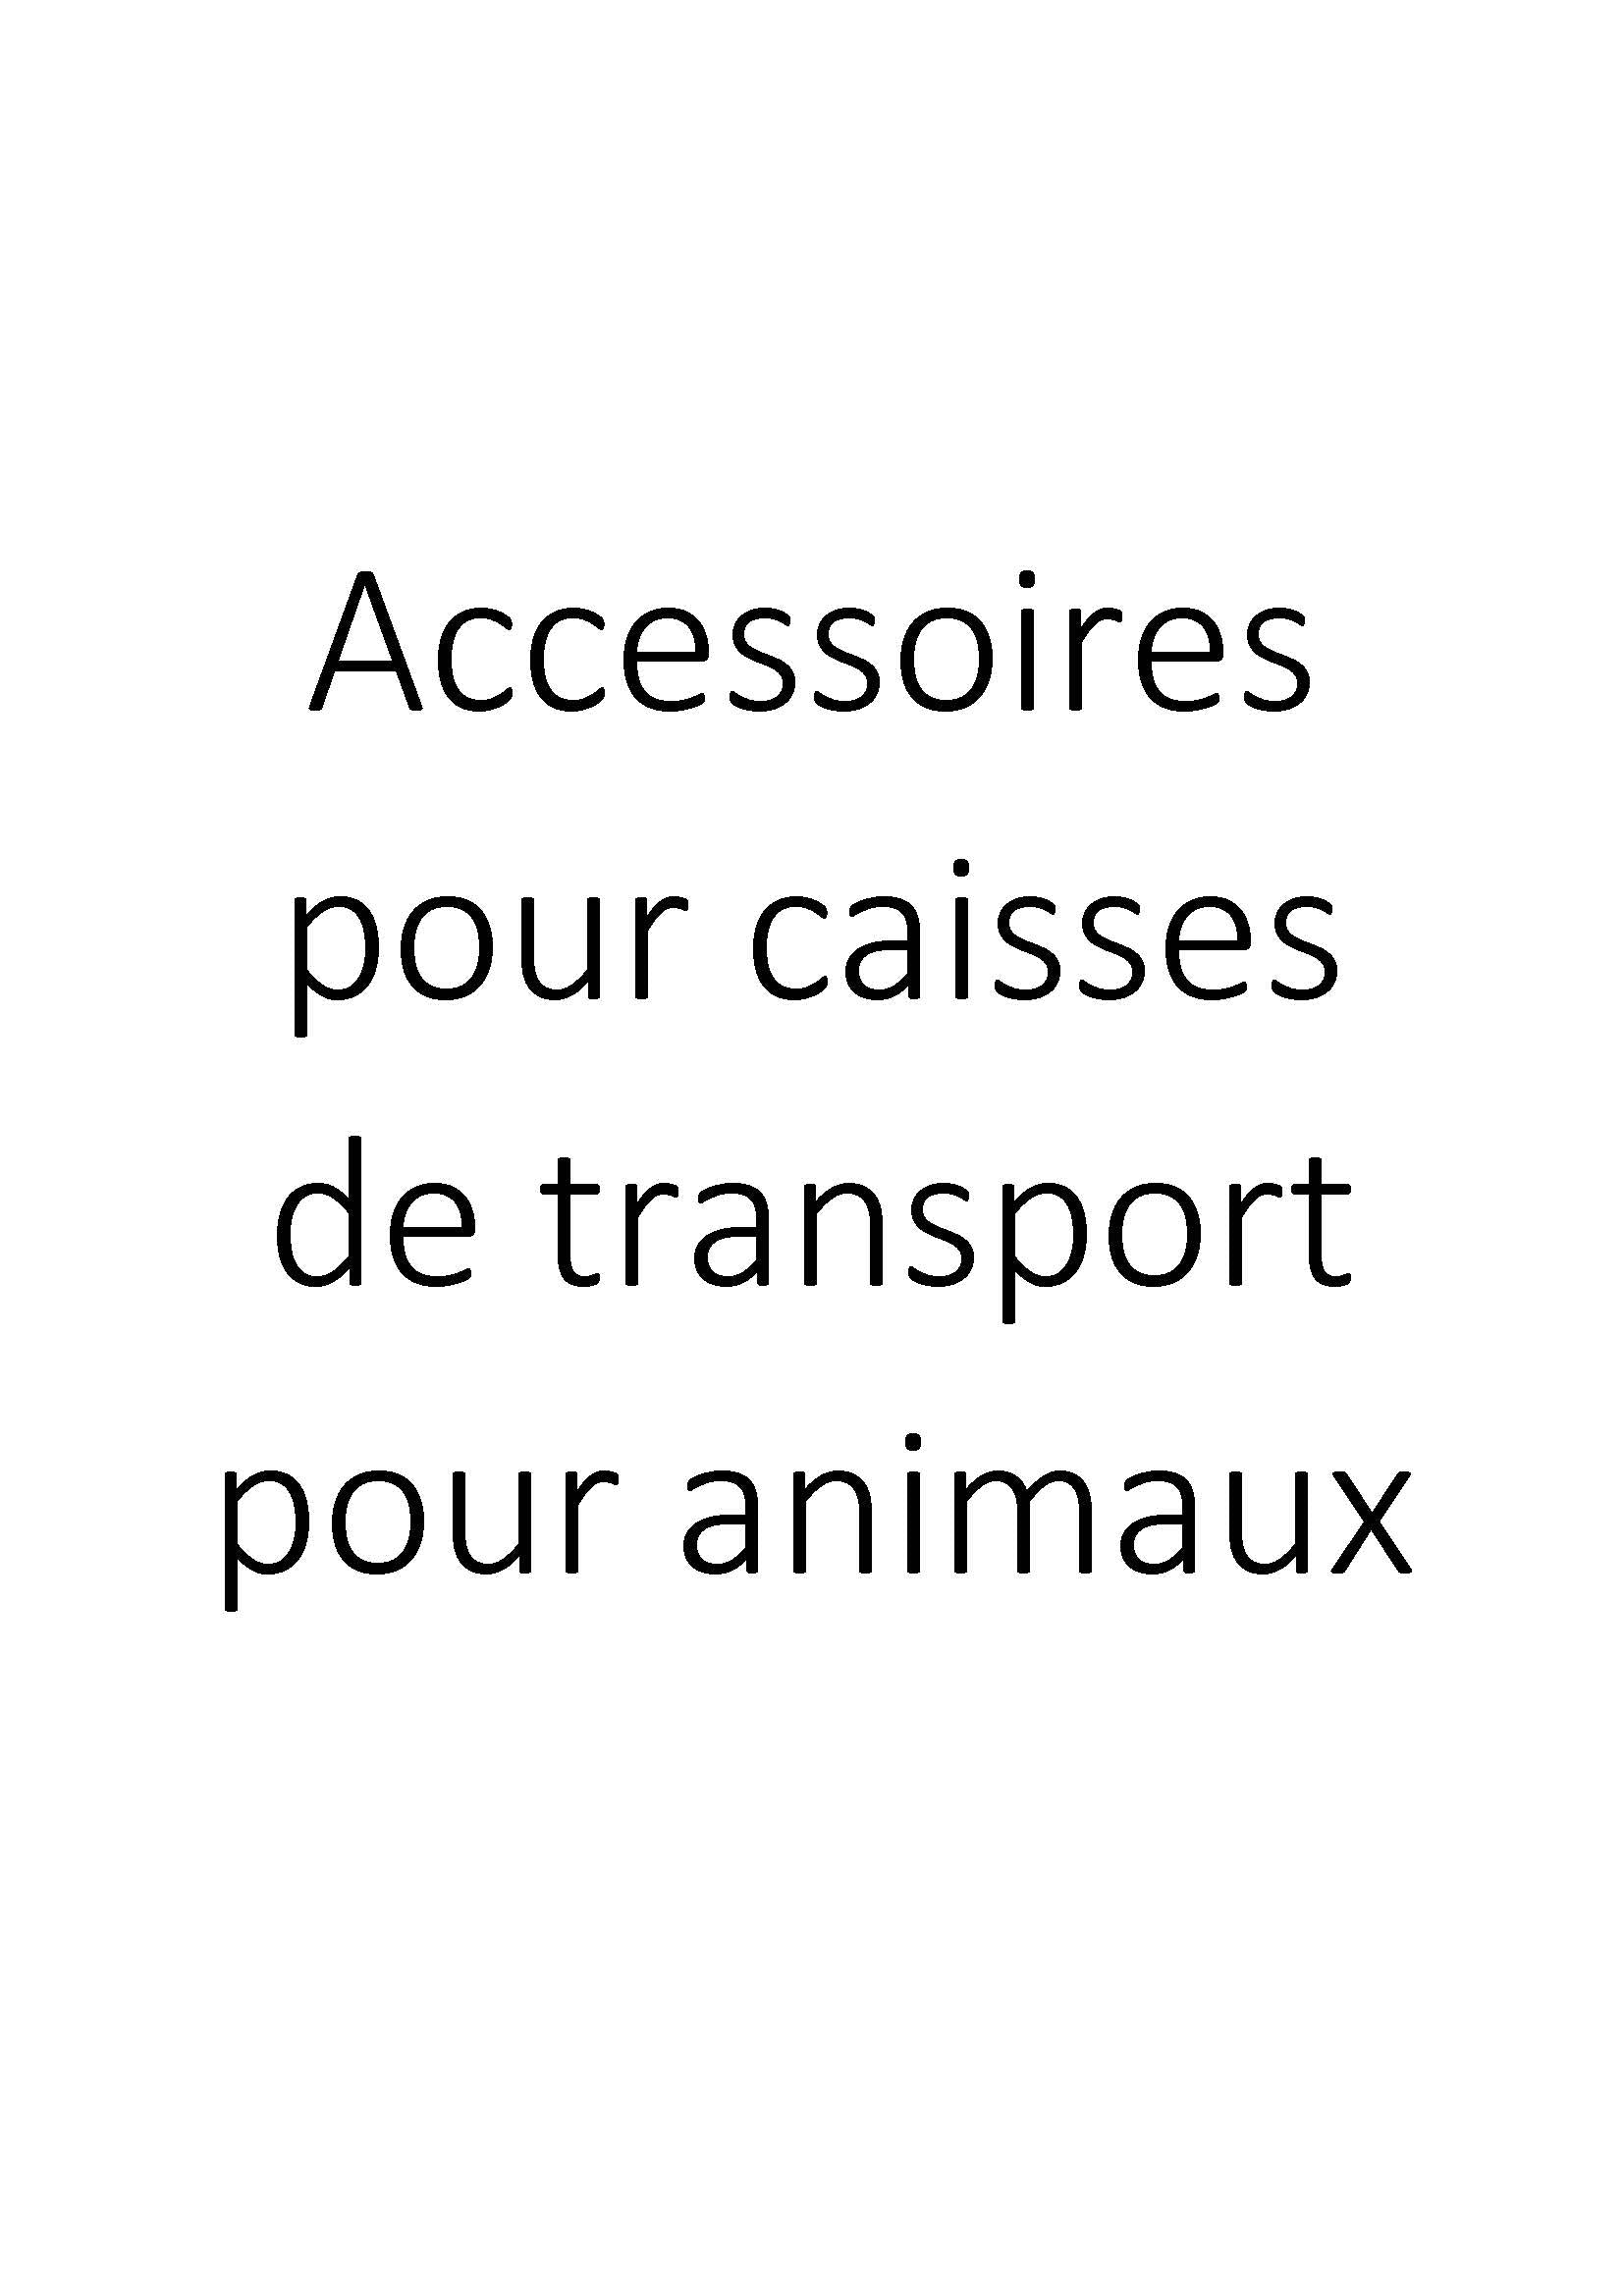 Accessoires pour caisses de transport pour animaux